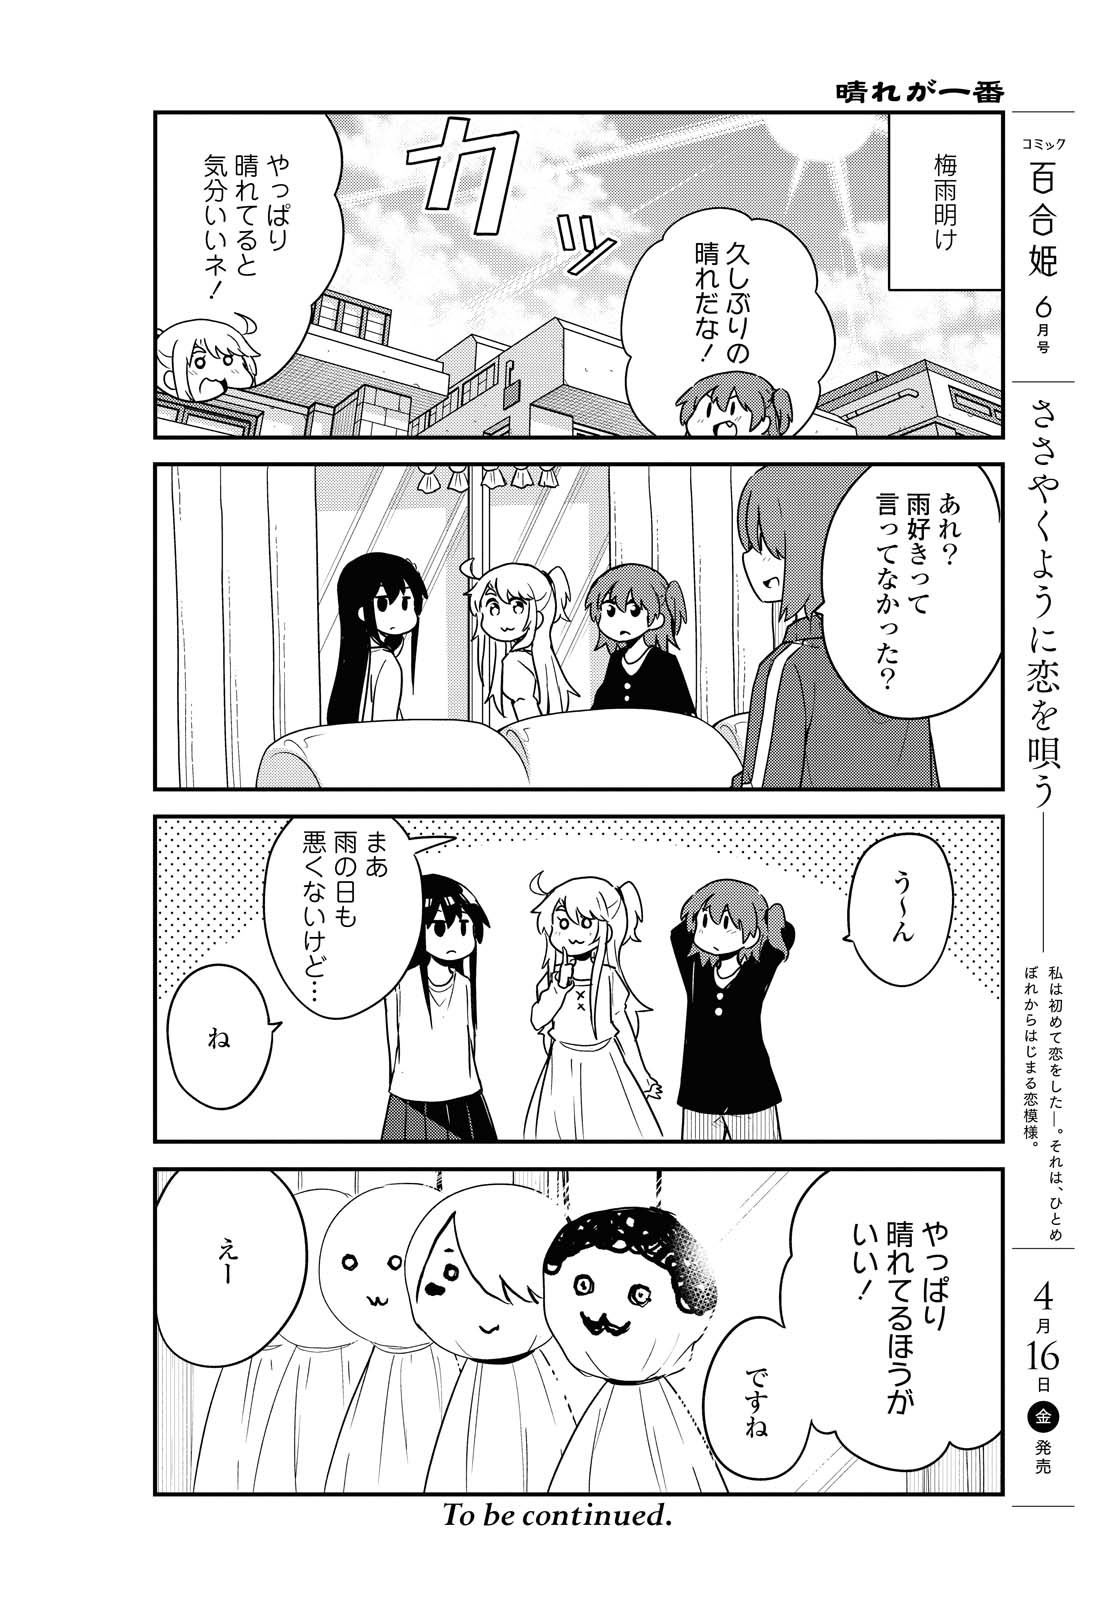 Watashi ni Tenshi ga Maiorita! - Chapter 79 - Page 16